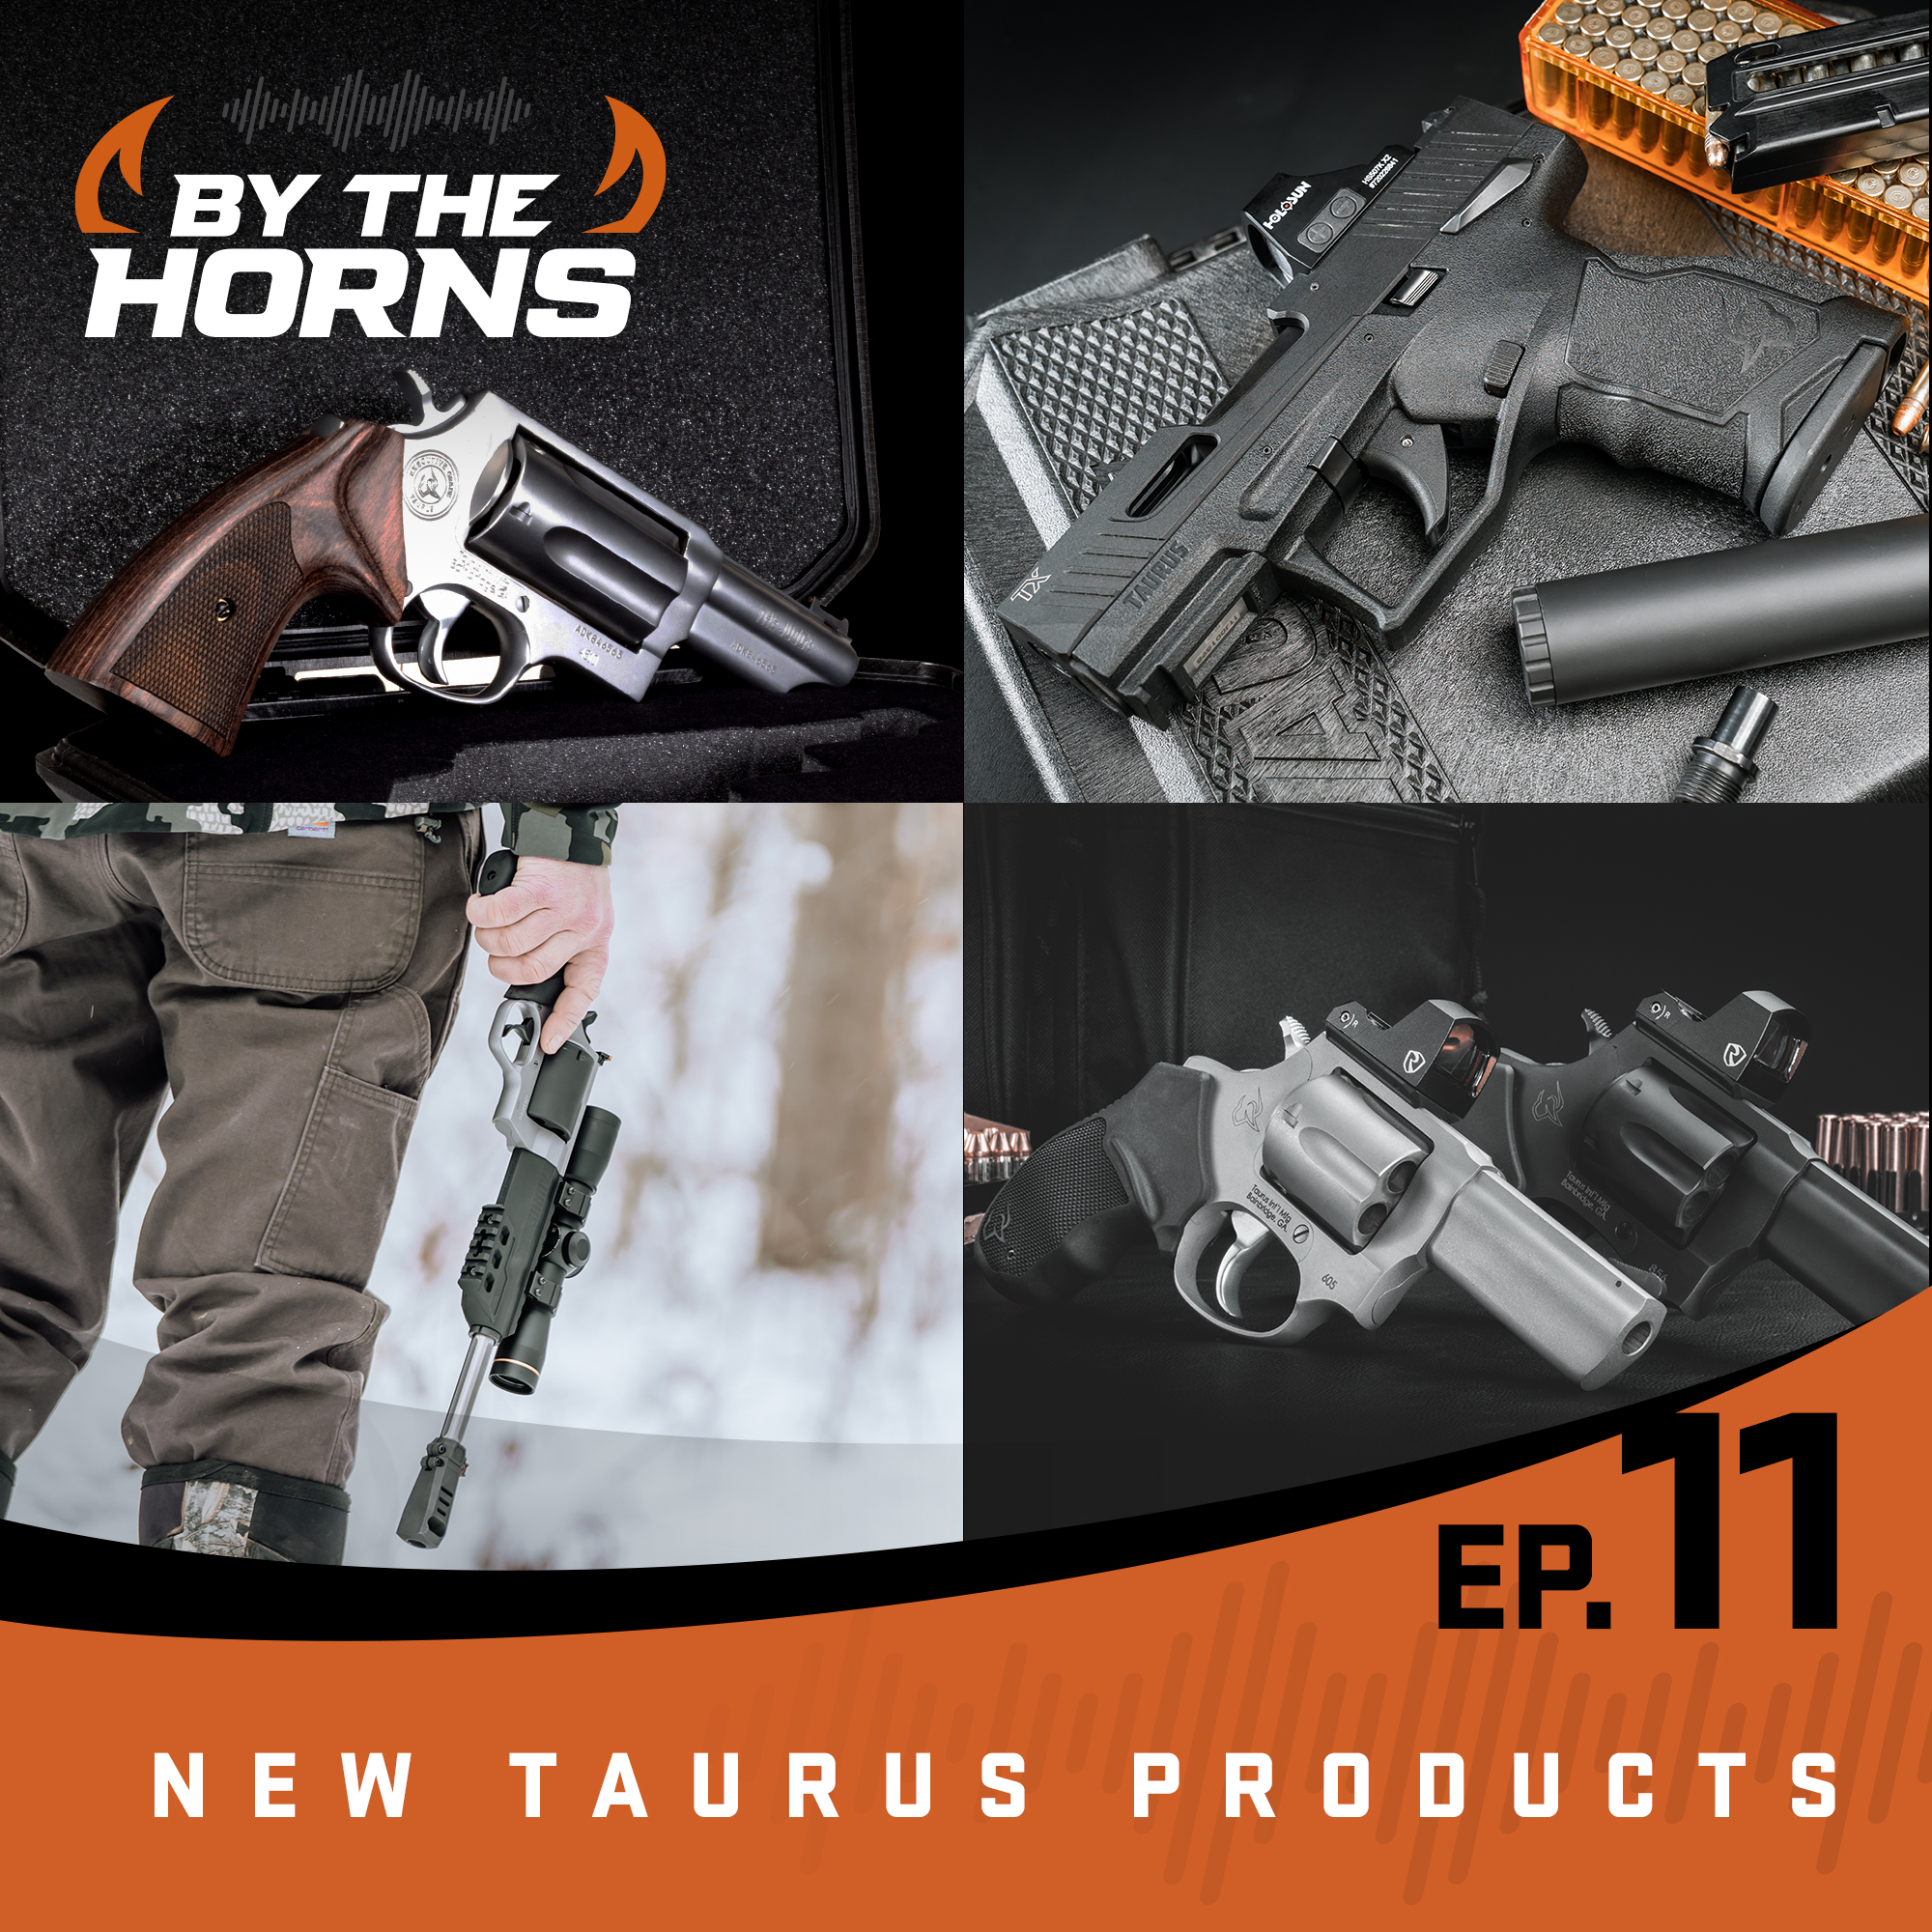 Taurus tem 4 armas no TOP 10 de melhores novos revólveres para 2023, do  canal especializado Gun News - DefesaNet